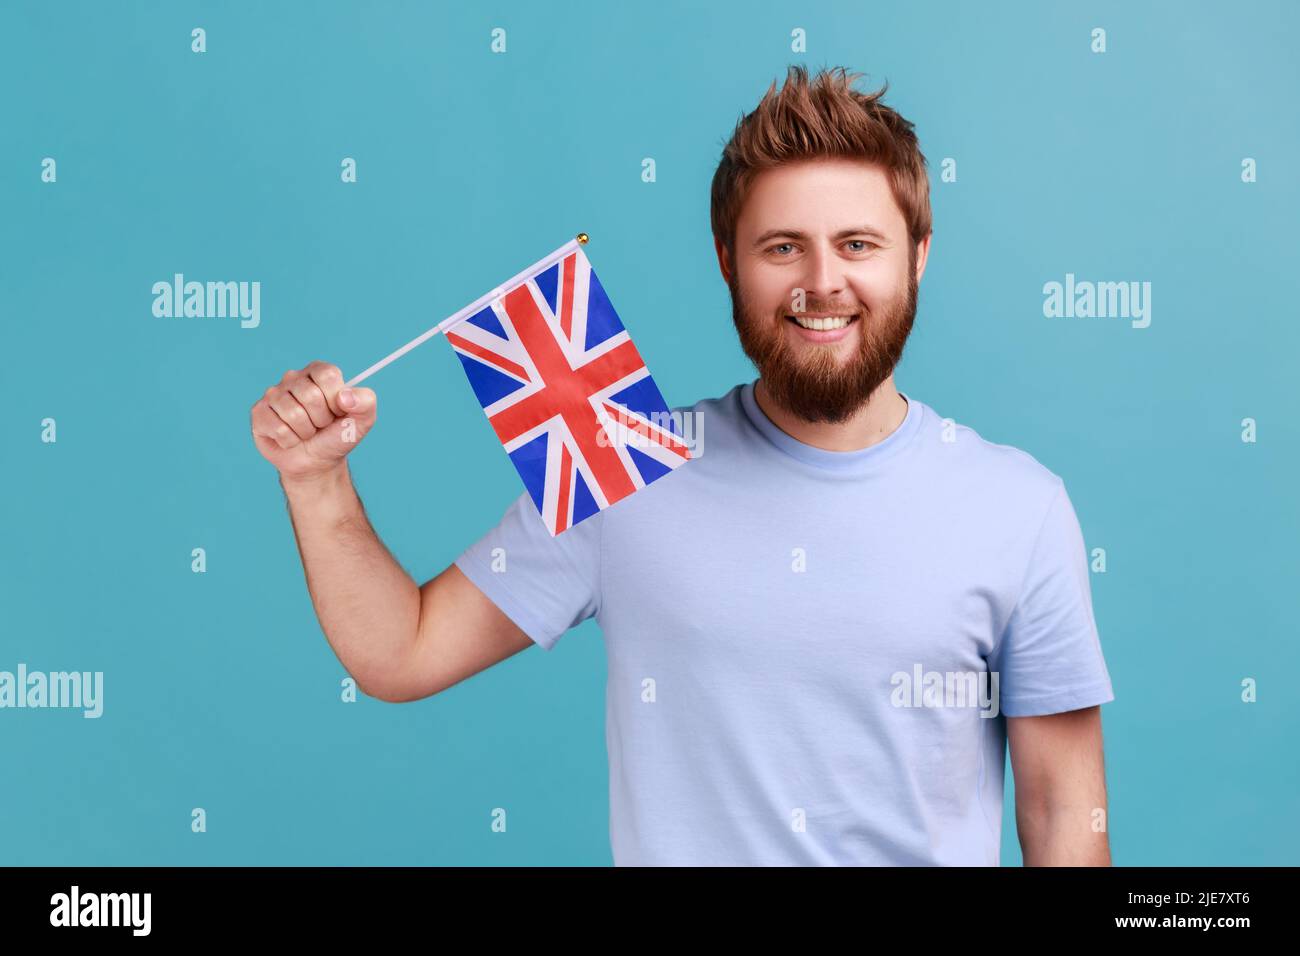 Porträt eines gutaussehenden, zufriedenen bärtigen Mannes, der die Flagge einer konstituierenden Einheit des Vereinigten Königreichs hält und den Tag der britischen Unabhängigkeit feiert. Innenaufnahme des Studios isoliert auf blauem Hintergrund. Stockfoto